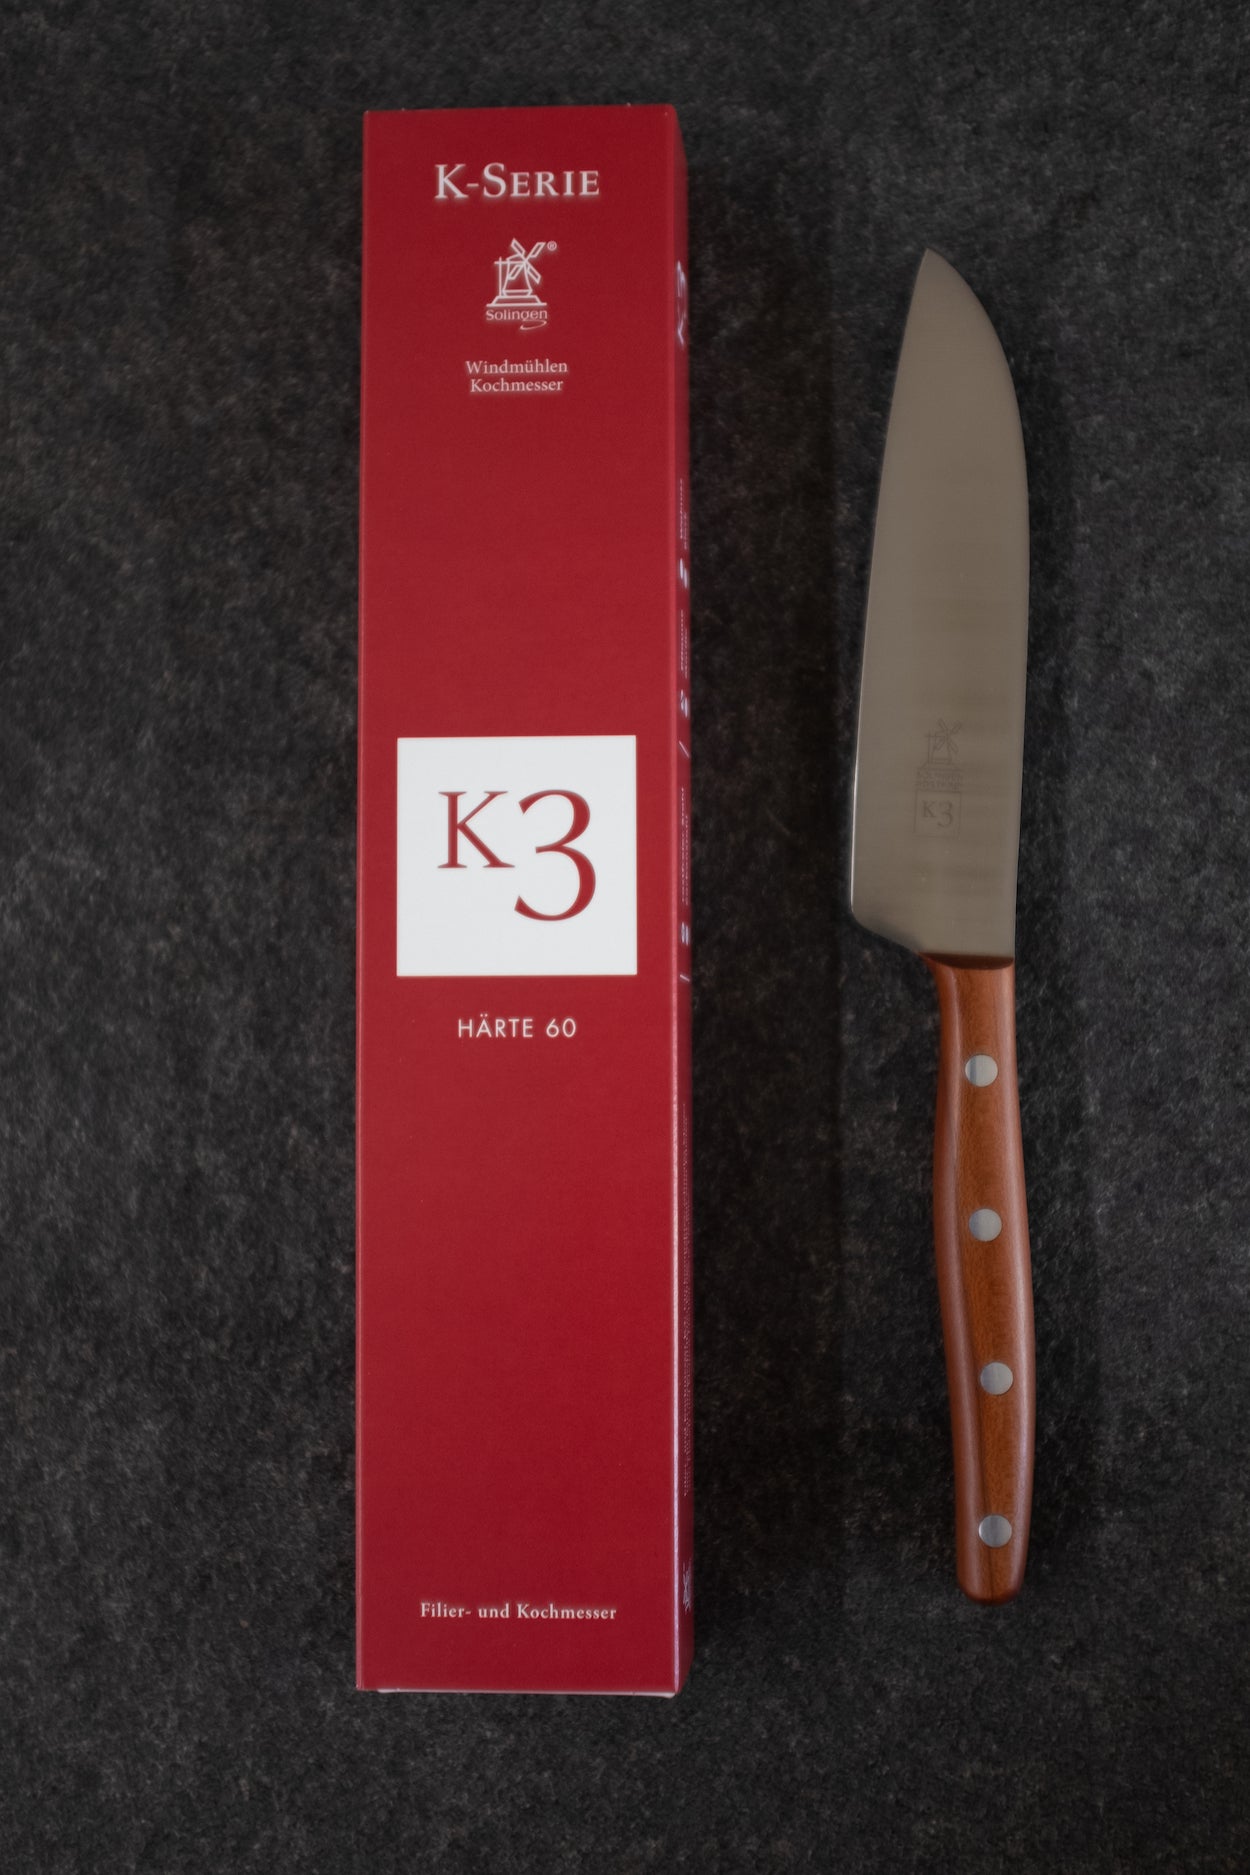 K-Serie von Windmühlenmesser. Original Verpackung und Kochmesser mit Pflaume-Griff.